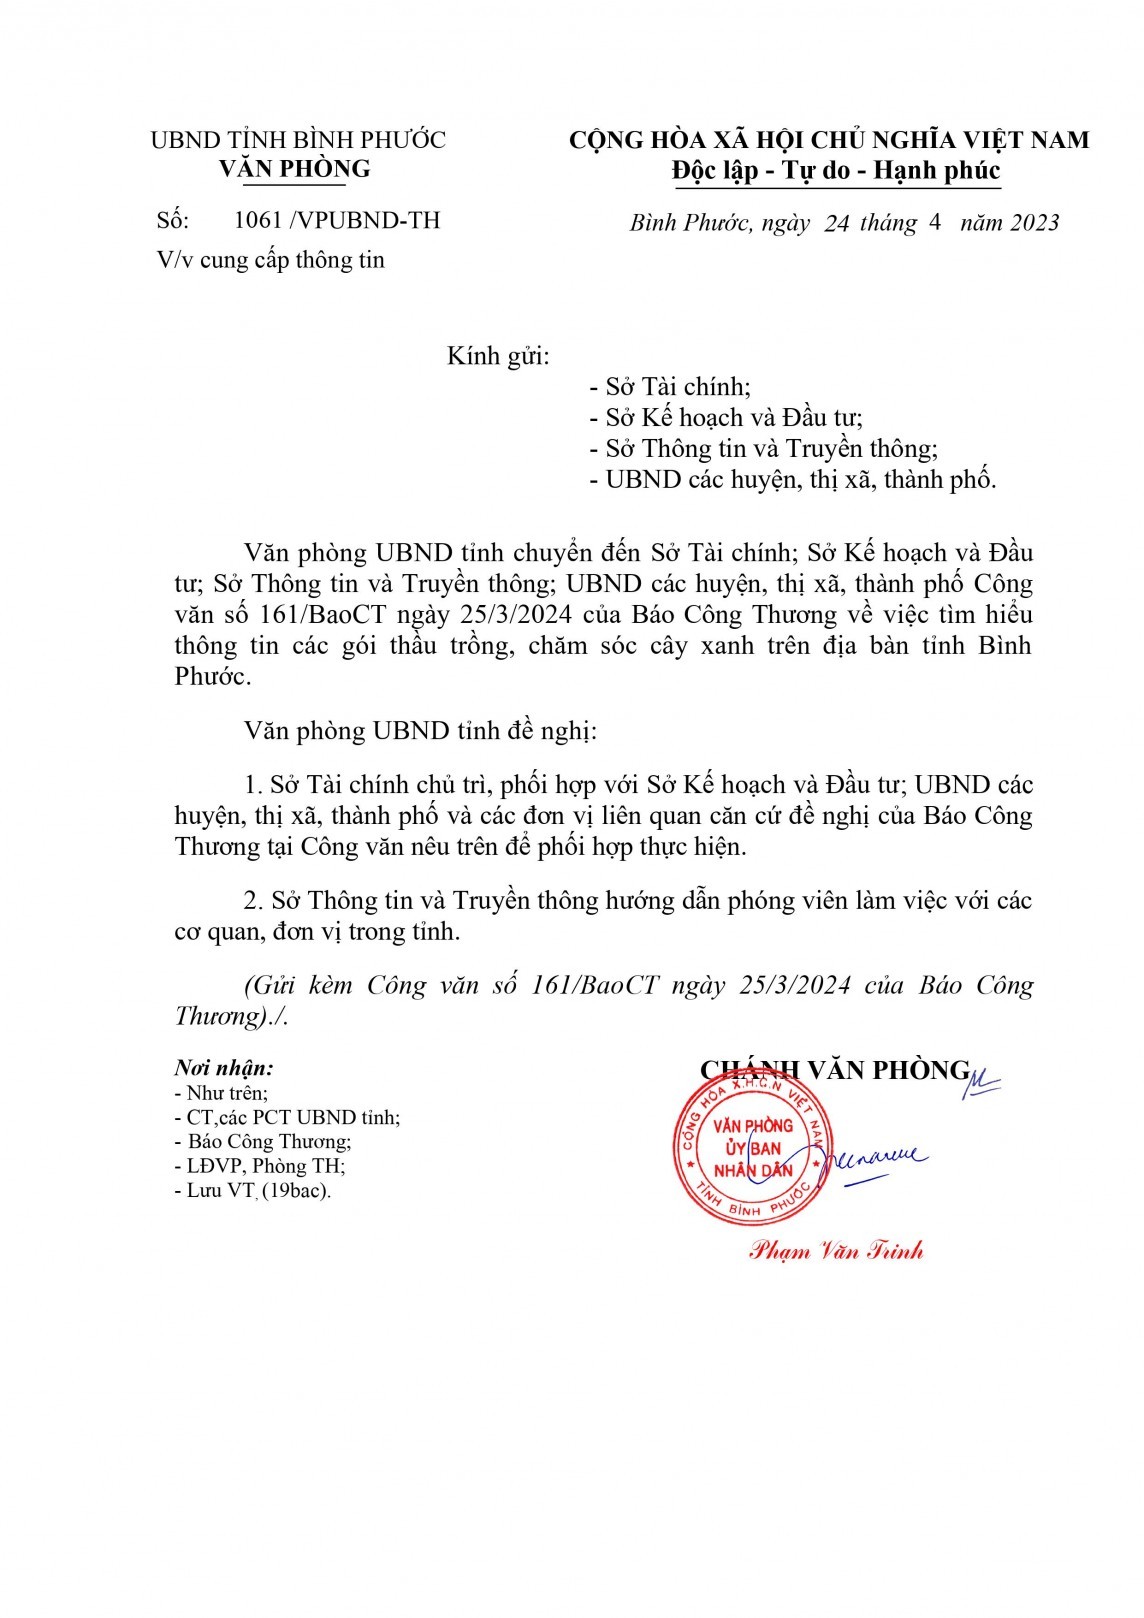 Cây xanh Bất chấp chỉ đạo của UBND tỉnh Bình Phước, đến nay các cơ quan liên quan chưa cung cấp thông tin cho Báo Công Thương (Ảnh: Ngân Nga)